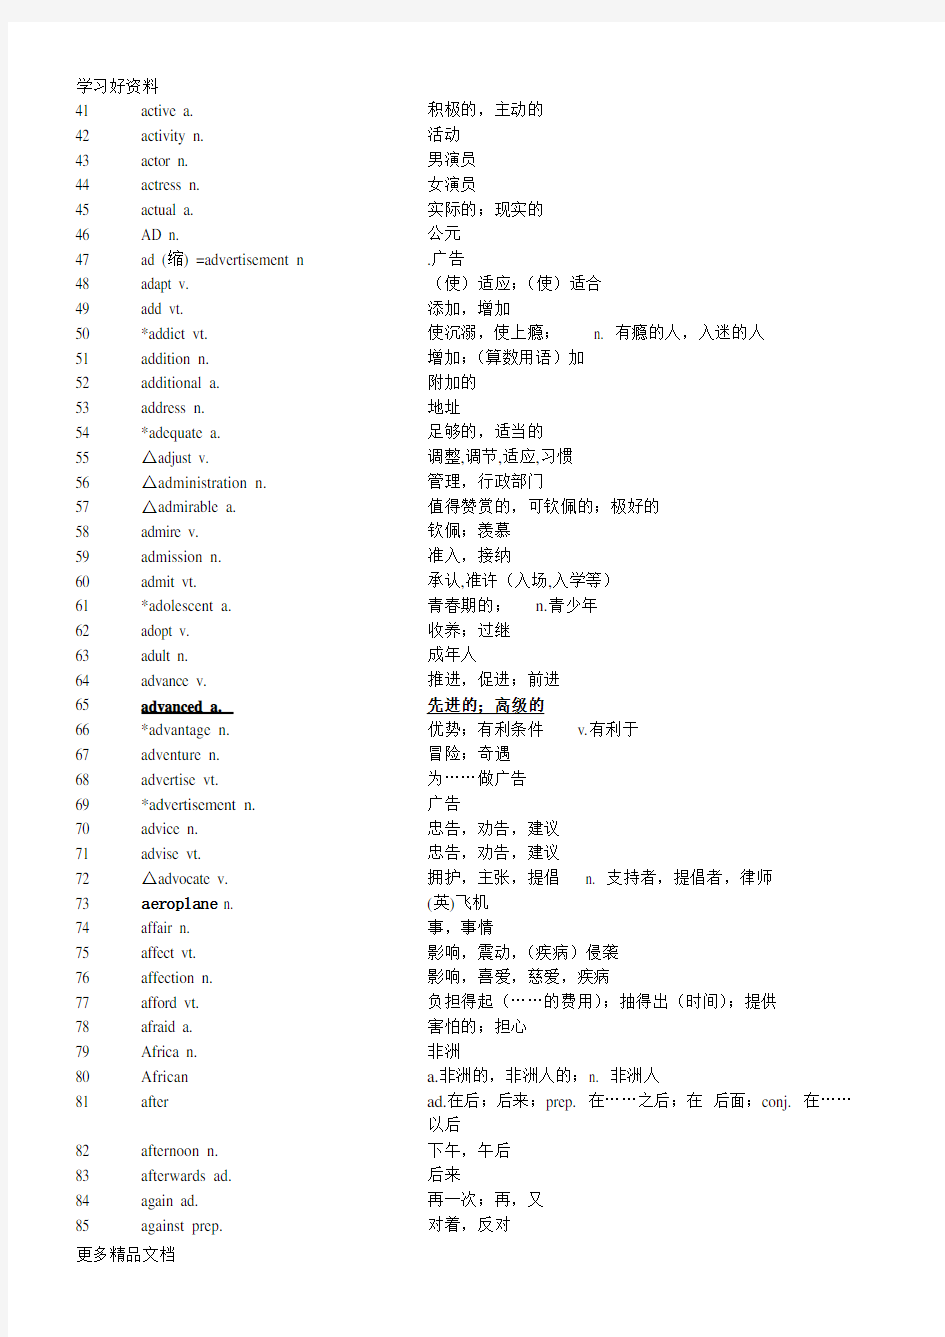 上海高考英语考纲词汇表汇总汇编